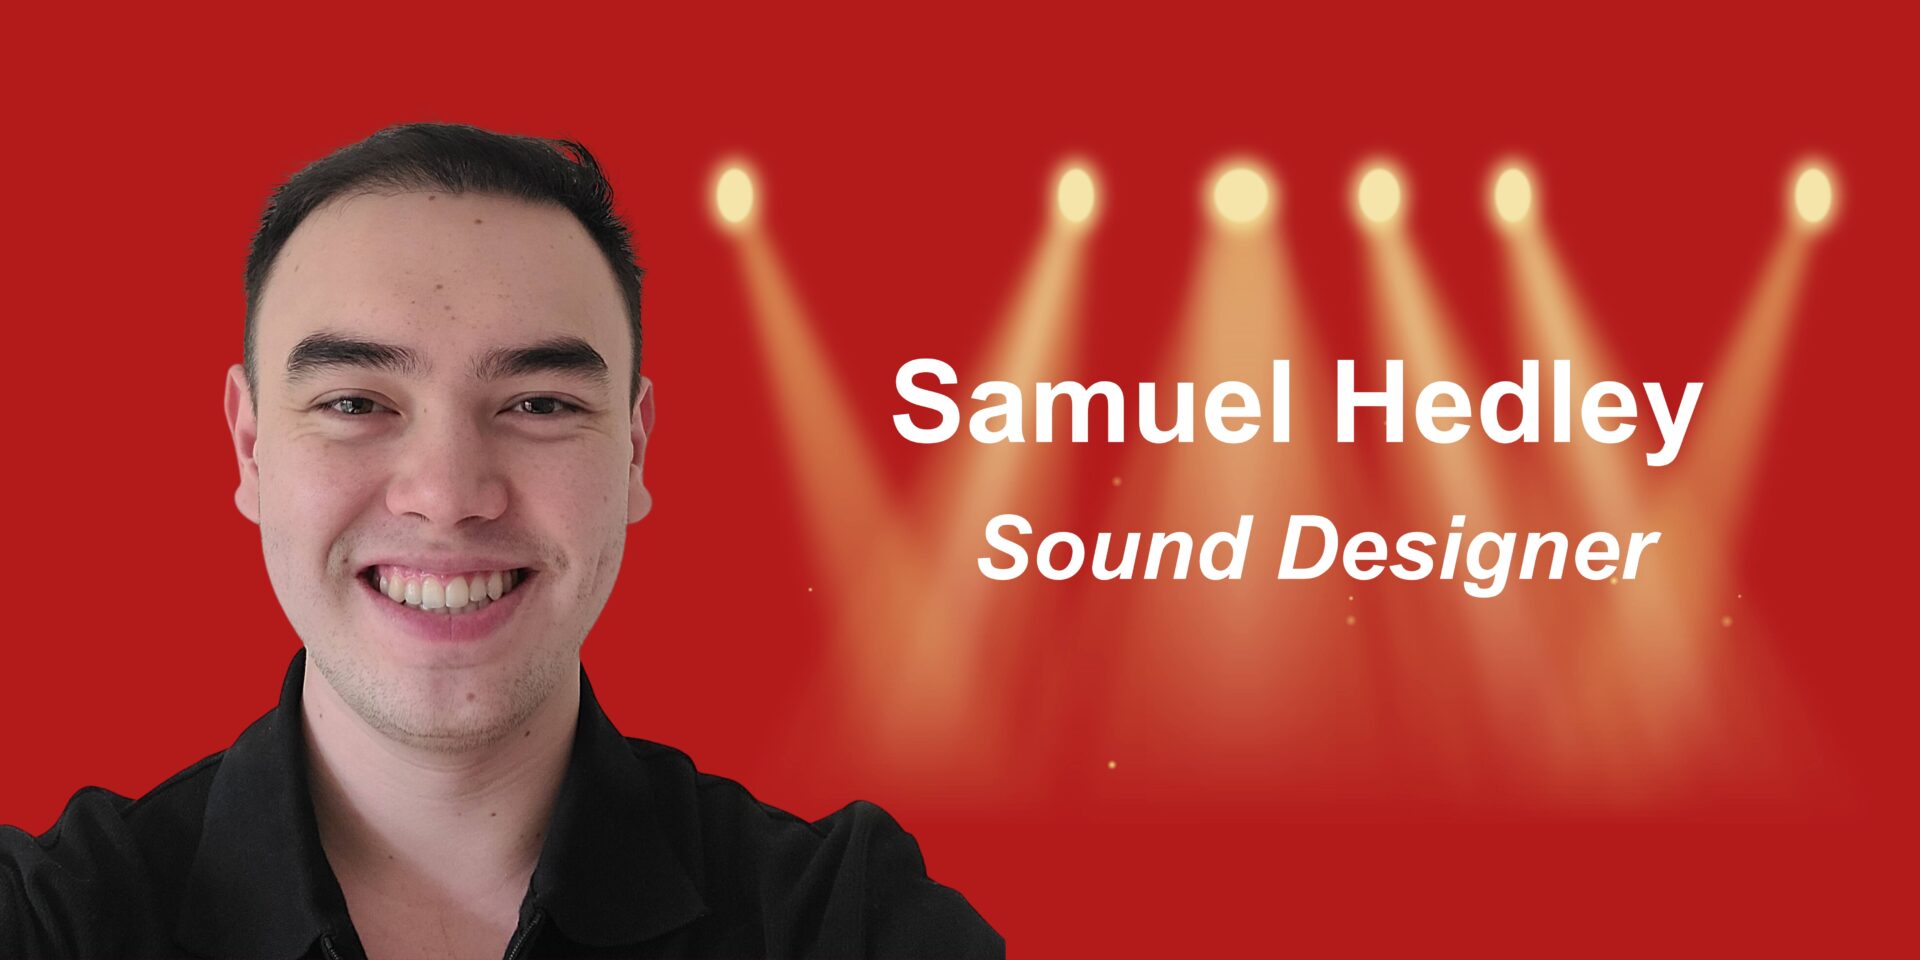 Samuel Hedley, Sound Designer